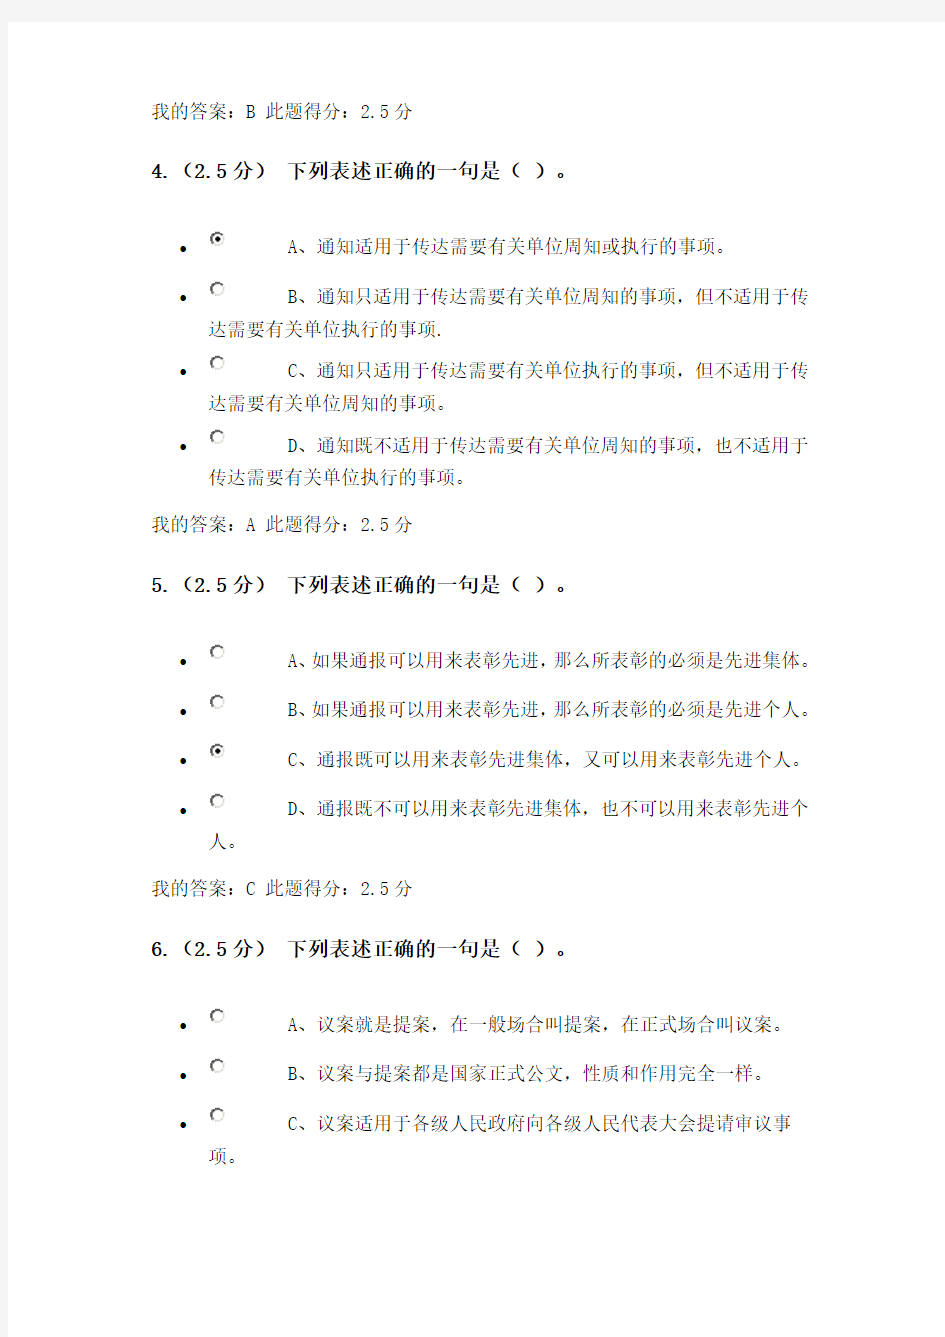 奥鹏中石油北京16春《现代应用文写作》第二阶段在线作业答案